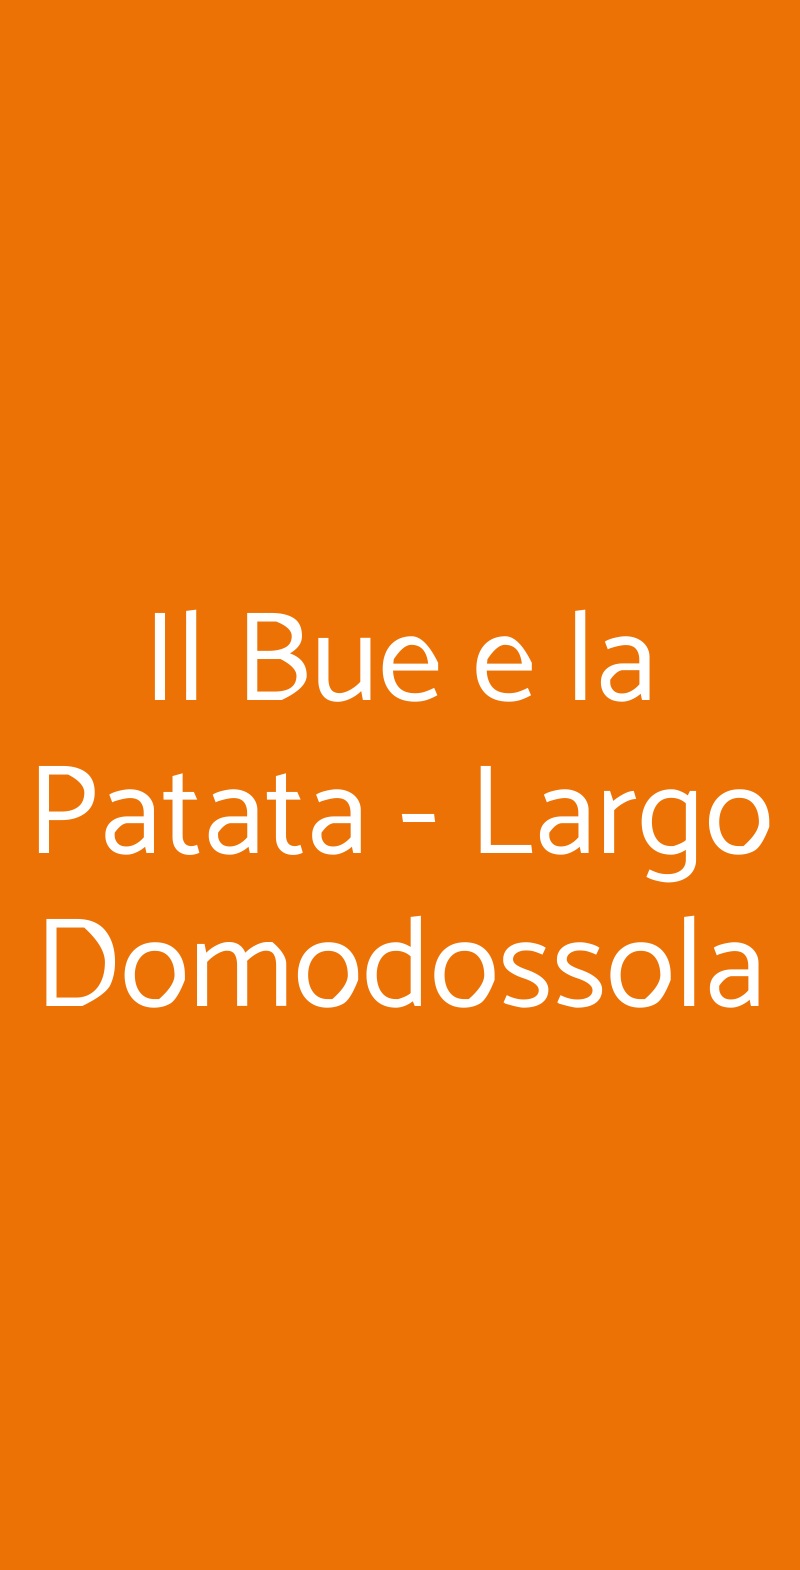 Il Bue e la Patata - Largo Domodossola Milano menù 1 pagina